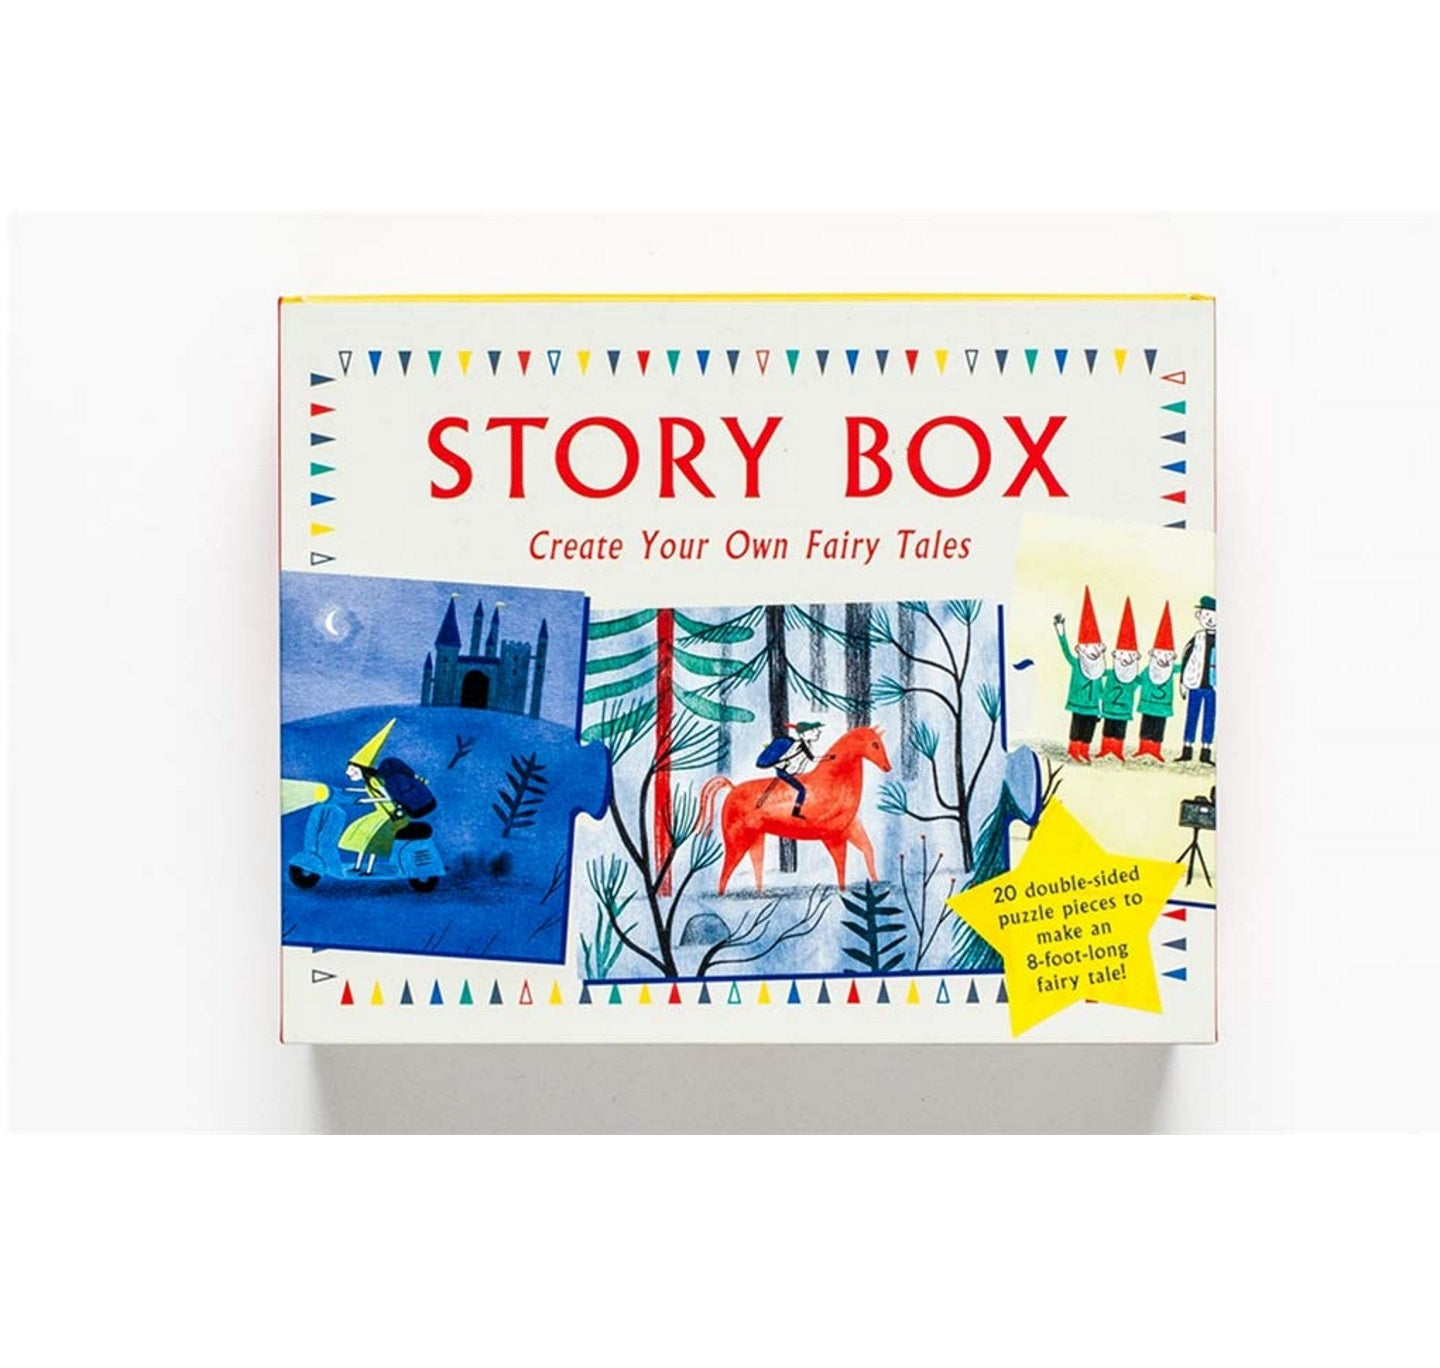 Own　RSC　The　Fairy　Create　–　Fairytales　Story　Your　Box:　shop